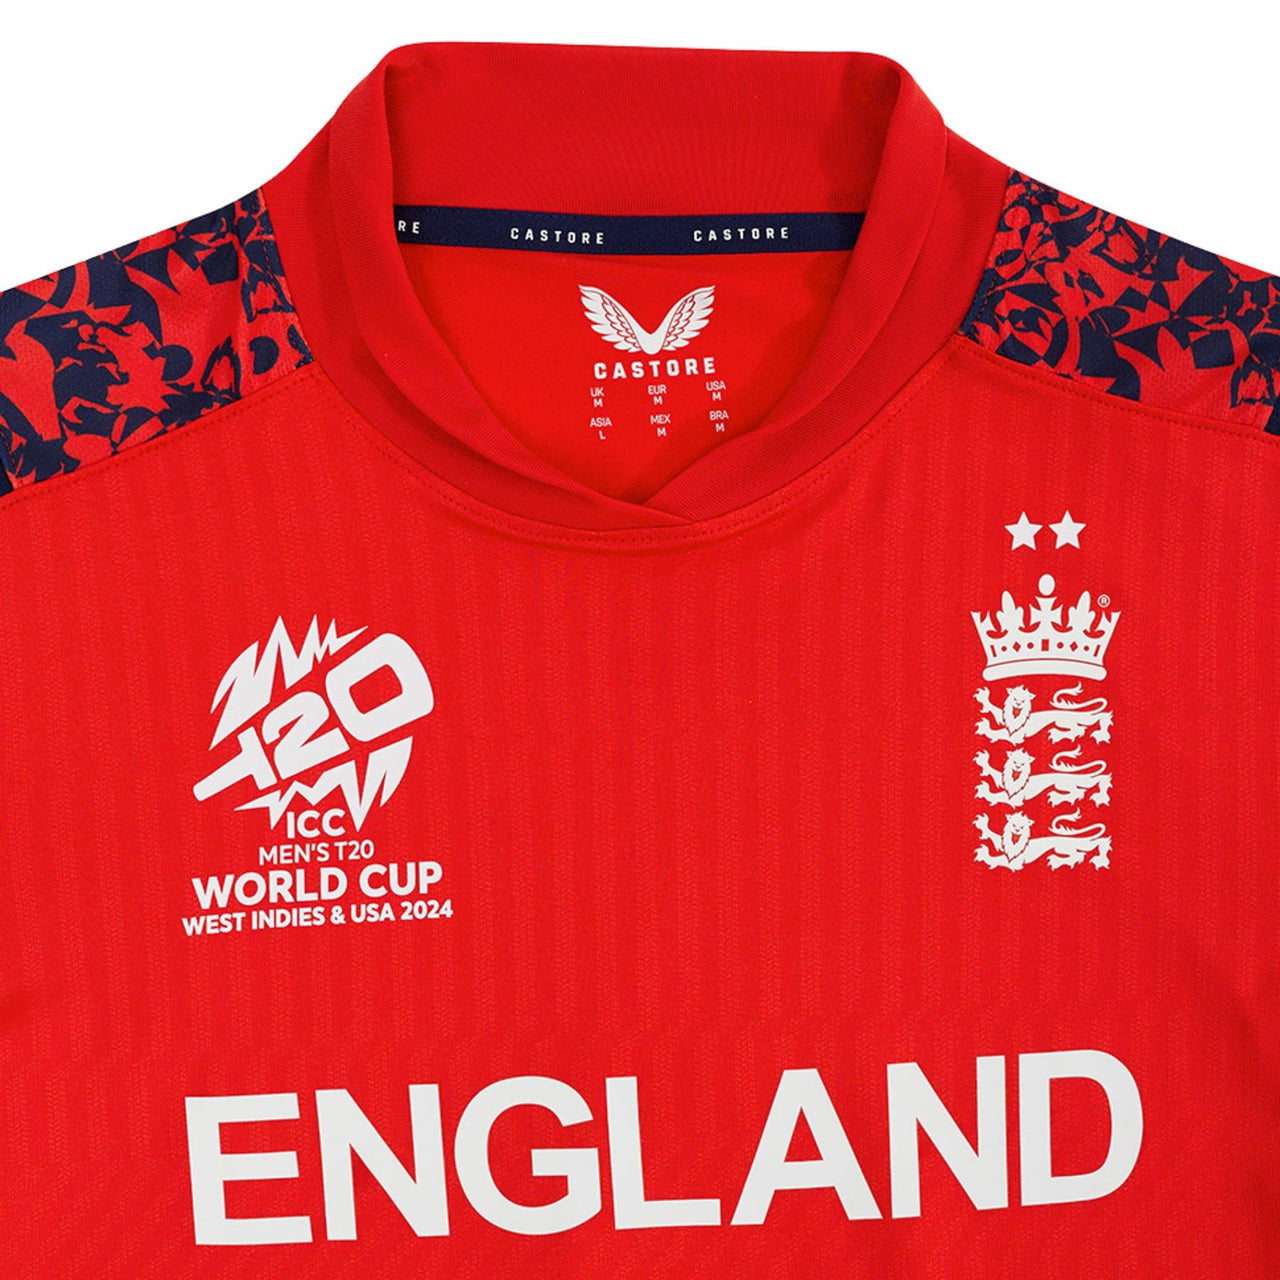 England Cricket Men's T20 World Cup 2024 Replica Short Sleeve Shirt | Fiery Red